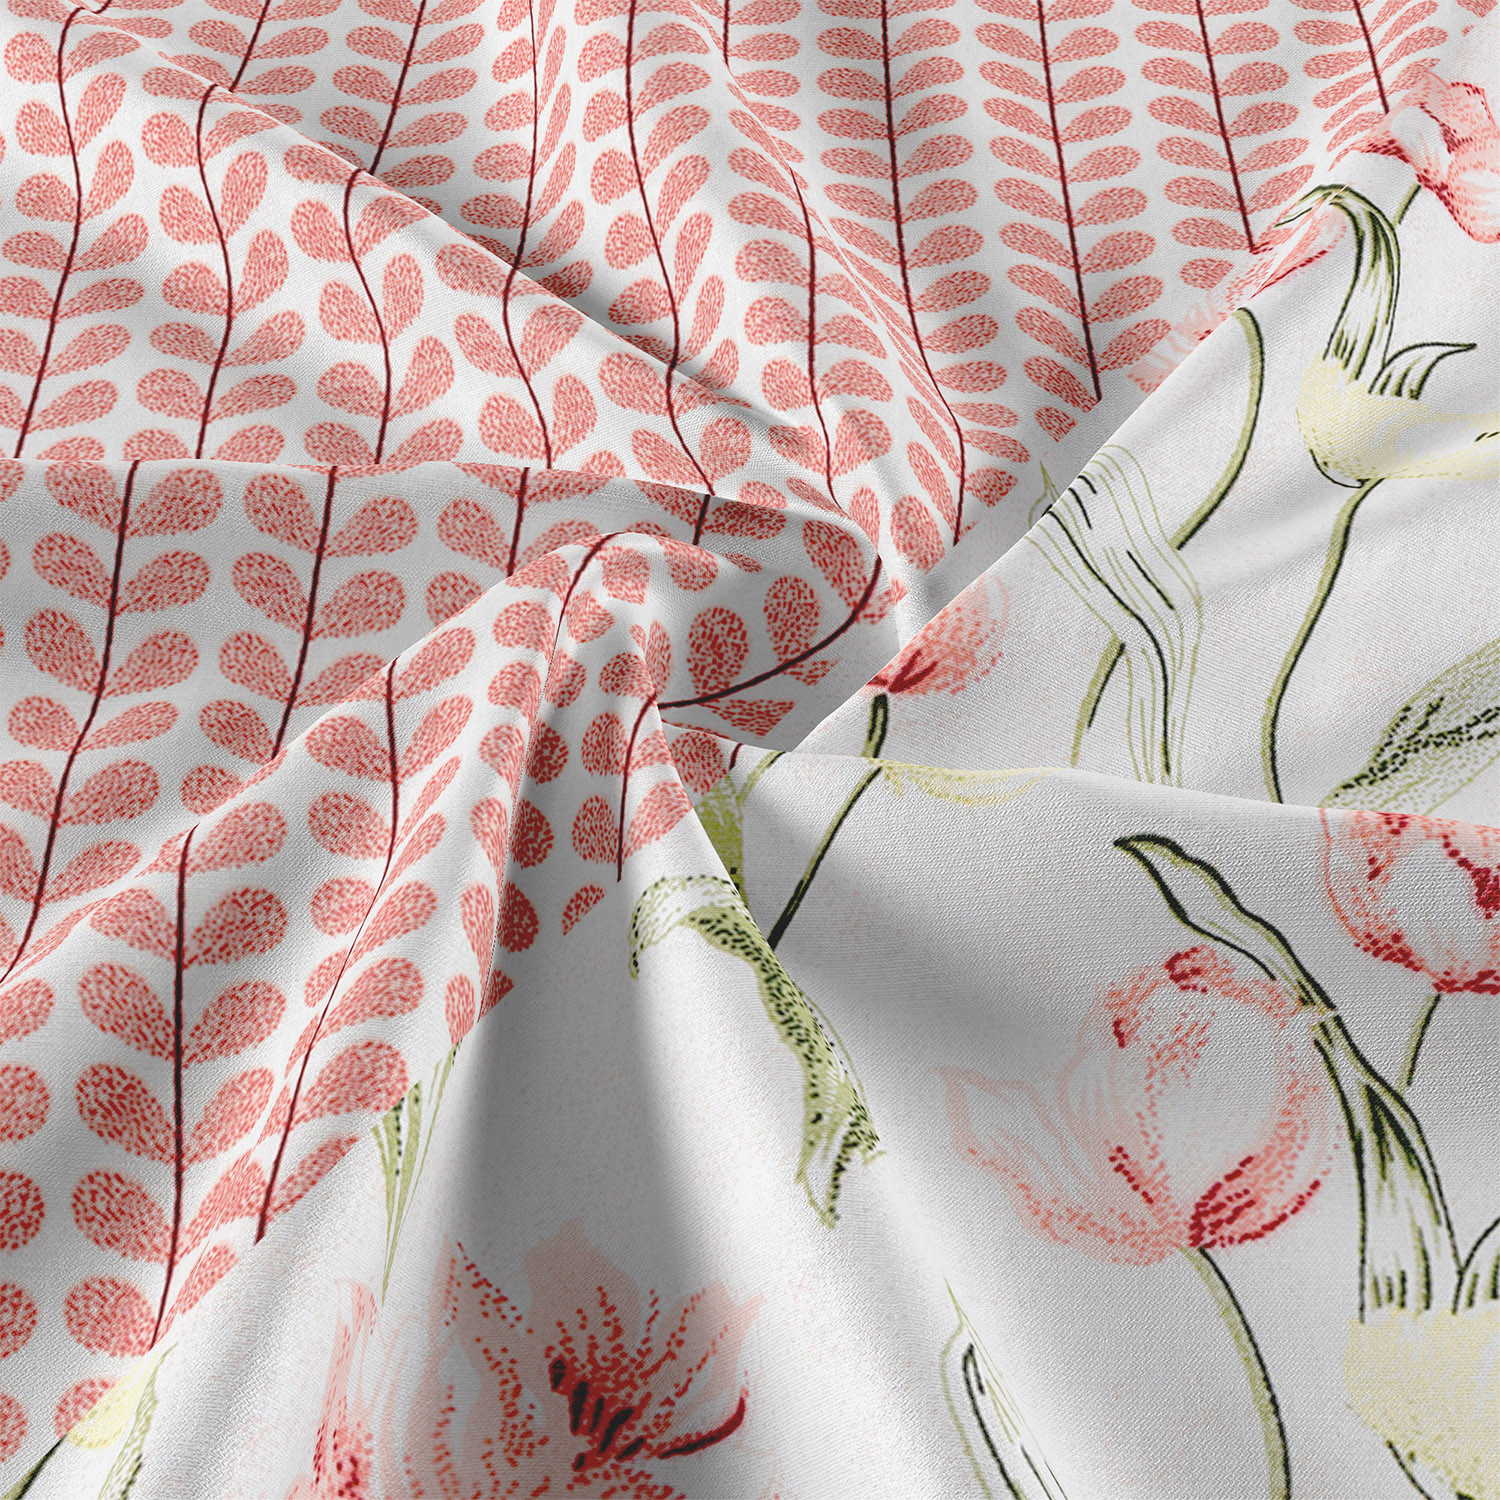 Kuber Industries Blanket | Cotton Single Bed Dohar | Blanket For Home | Reversible AC Blanket For Travelling | Blanket For Summer | Blanket For Winters | Red Flower | White